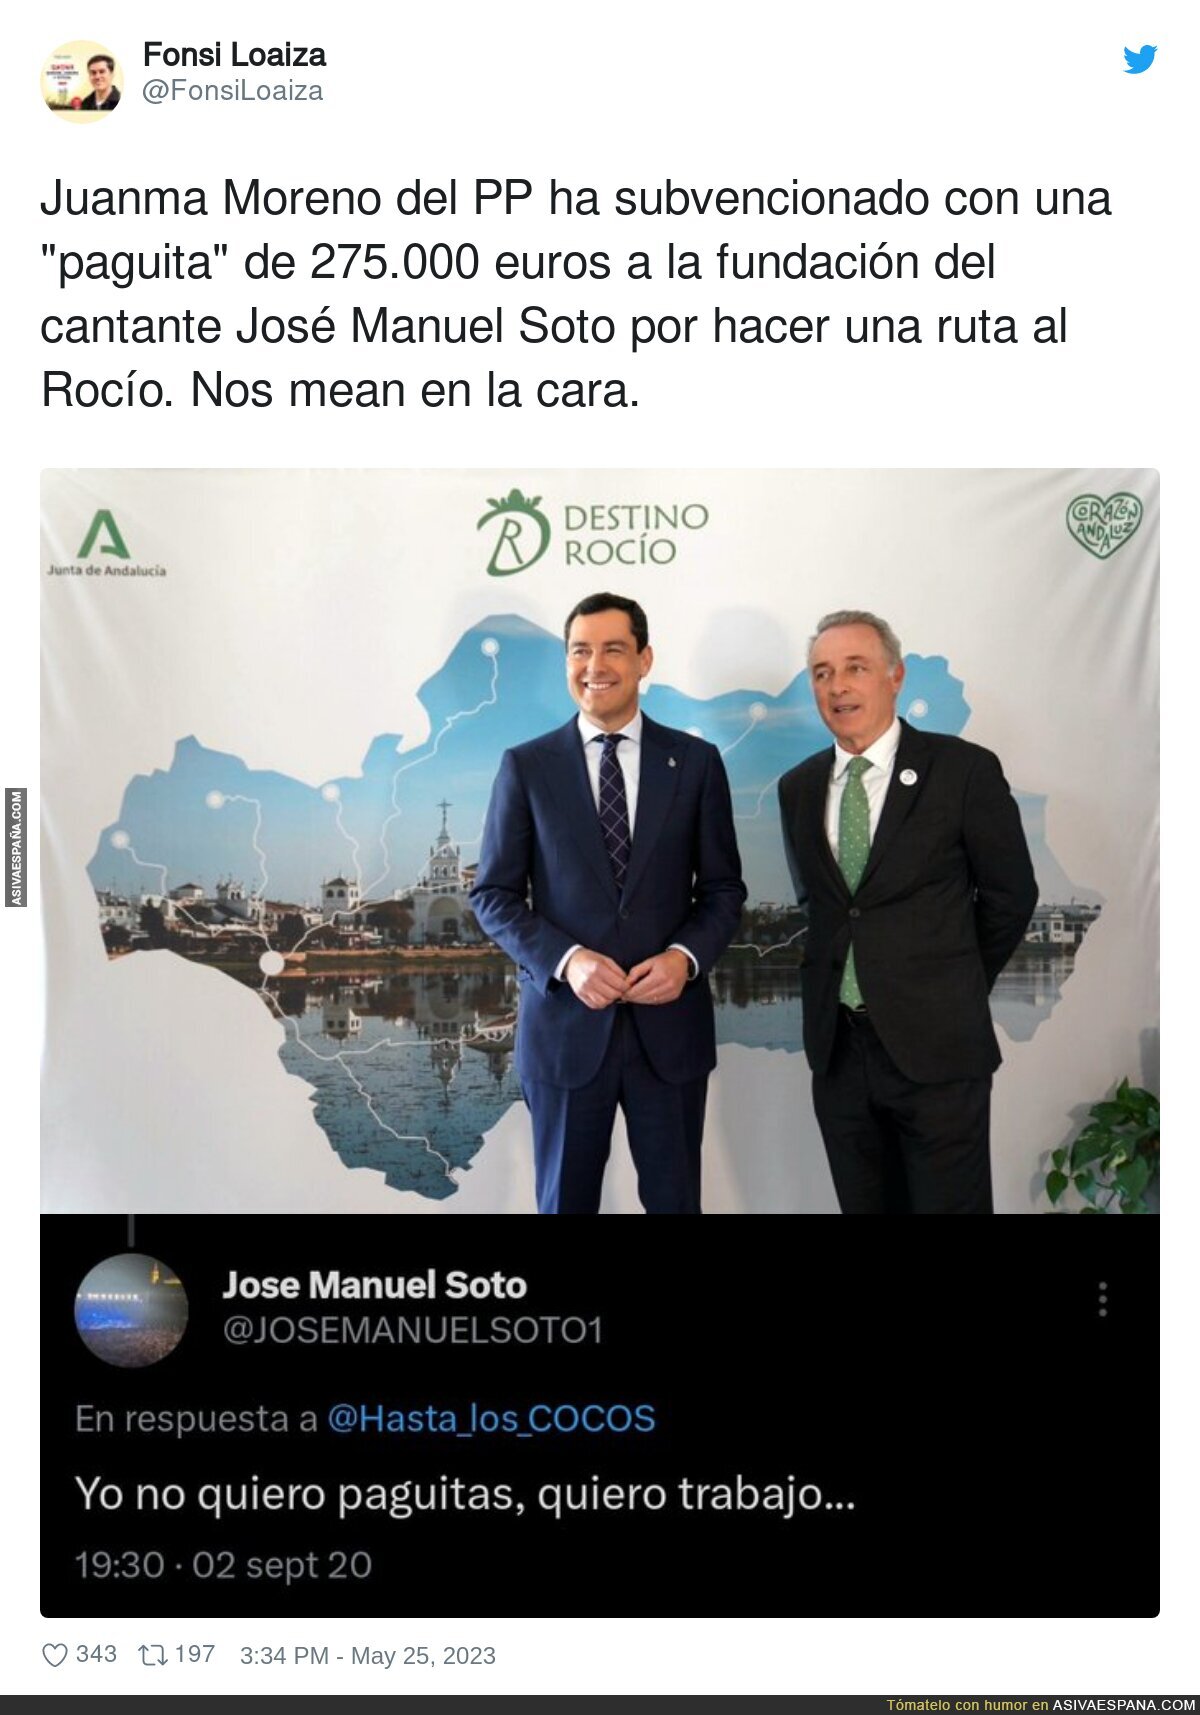 Las paguitas de José Manuel Soto